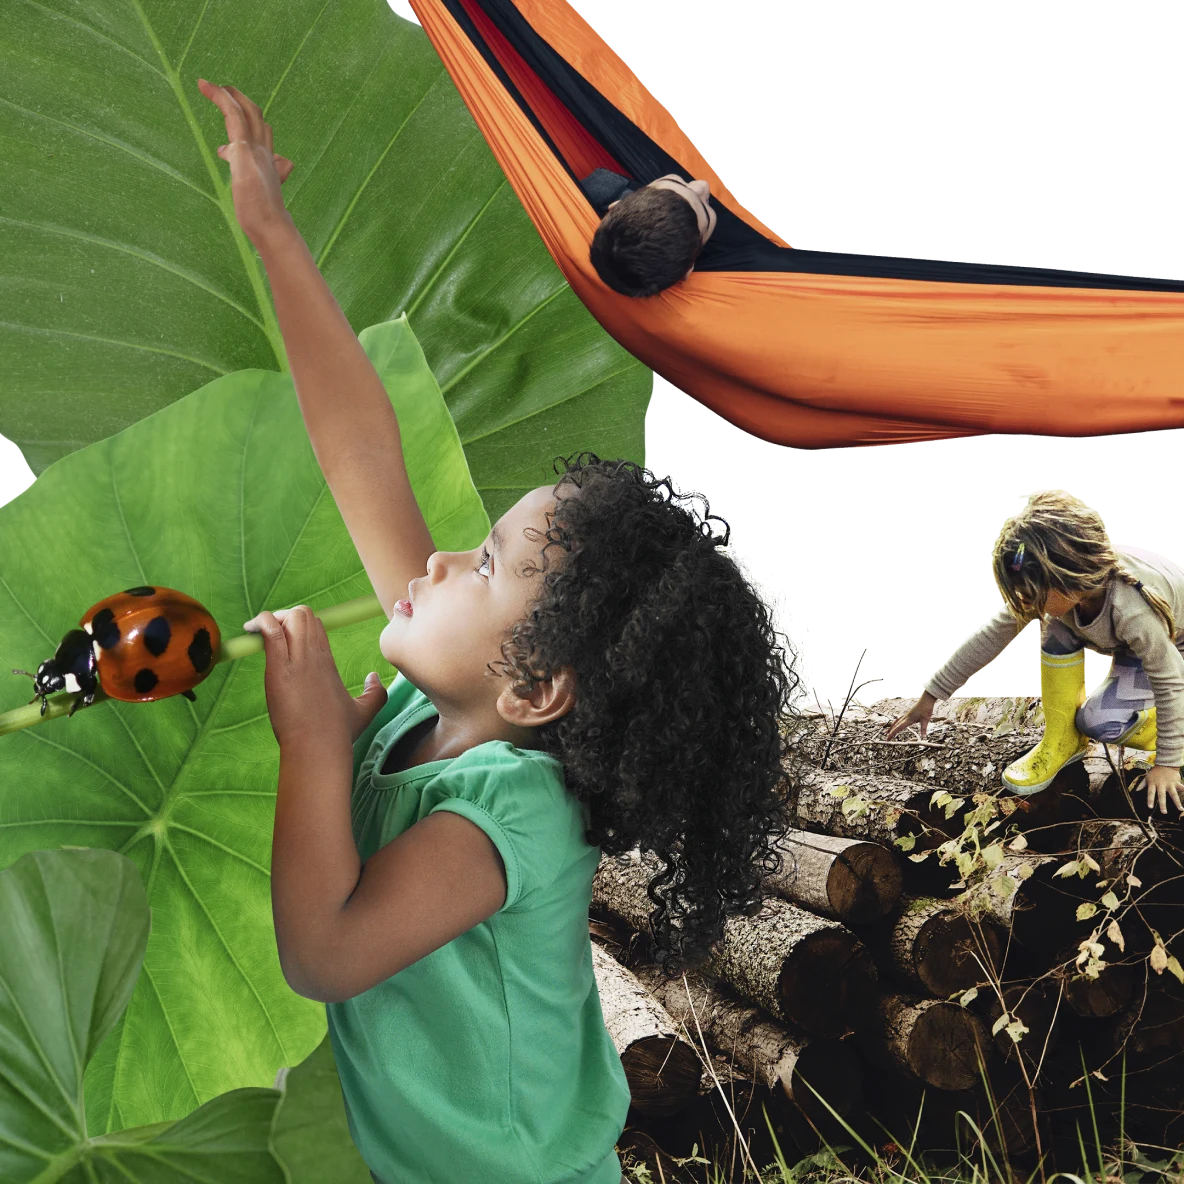 Ein Mädchen in einem grünen T-Shirt vor großen grünen Blättern links streckt ihren Arm nach oben aus. Links krabbelt ein Marienkäfer. Rechts klettert ein Kind auf Baumstämmen. Oben liegt ein Kind in einer orangefarbenen Hängematte.